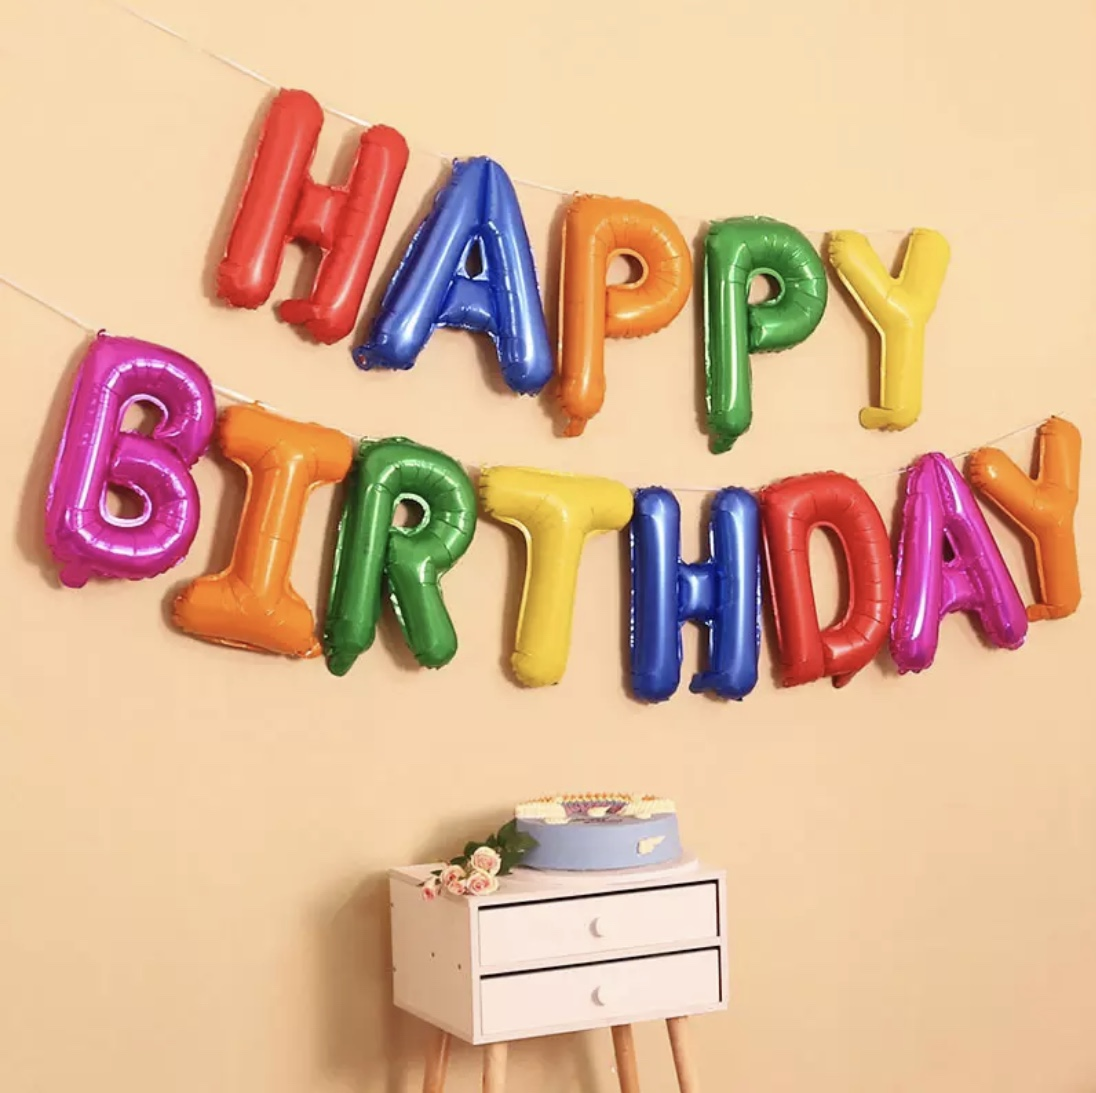 Фольгированная фигура буквы "Happy birthday" Набор букв (Цветные 40 см)